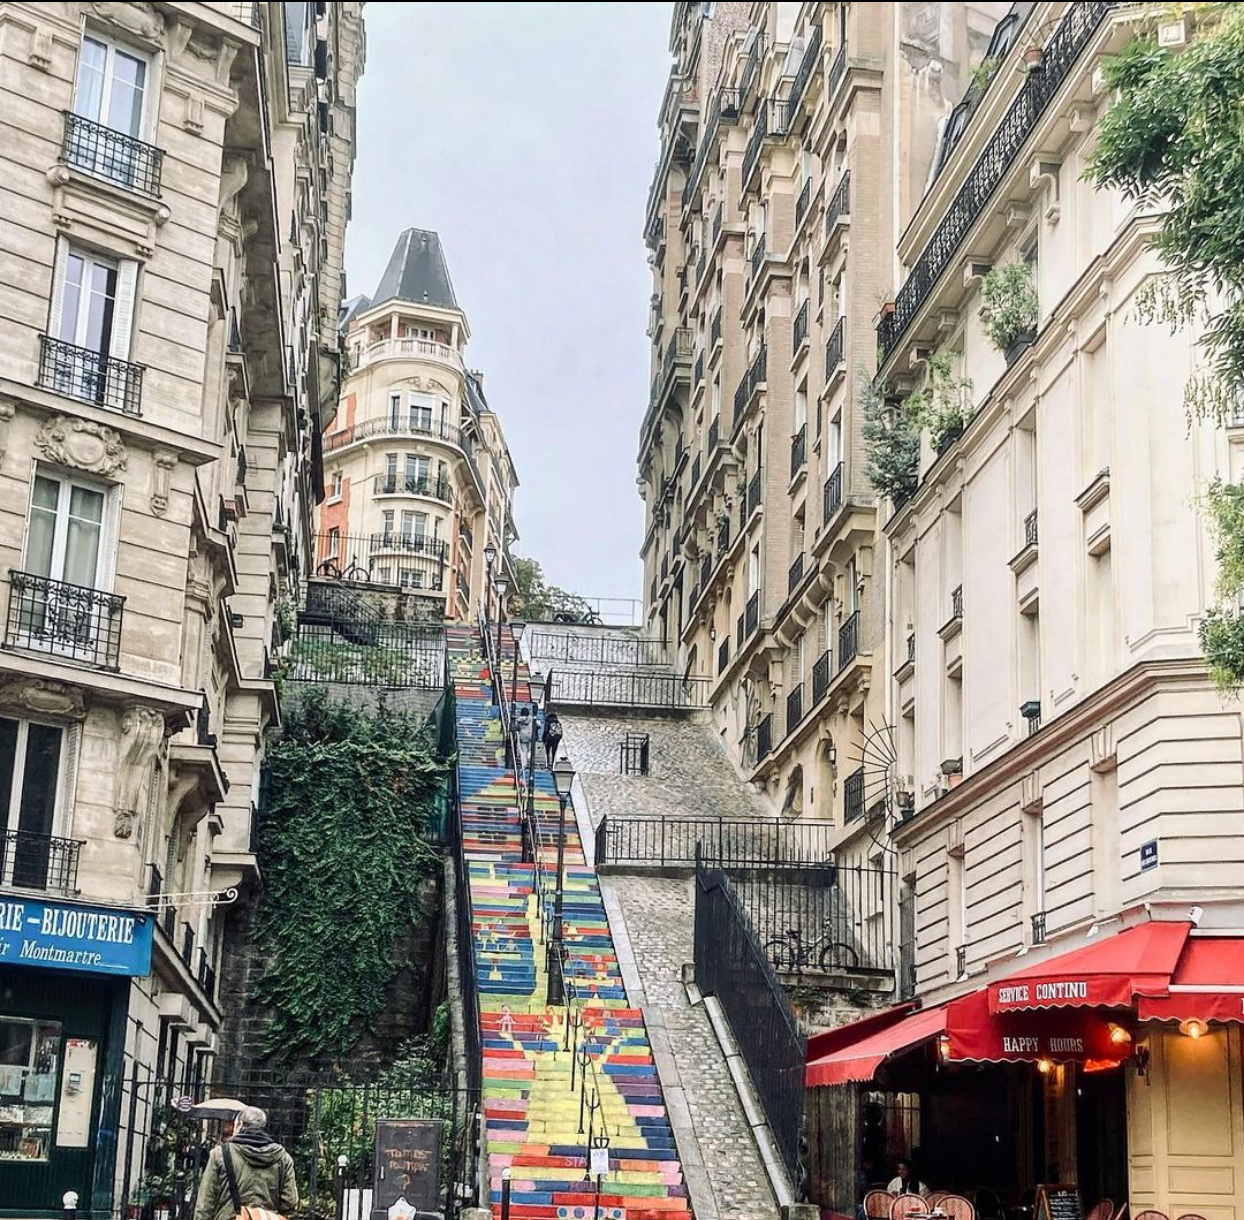 18th arrondissement of paris in montmartre